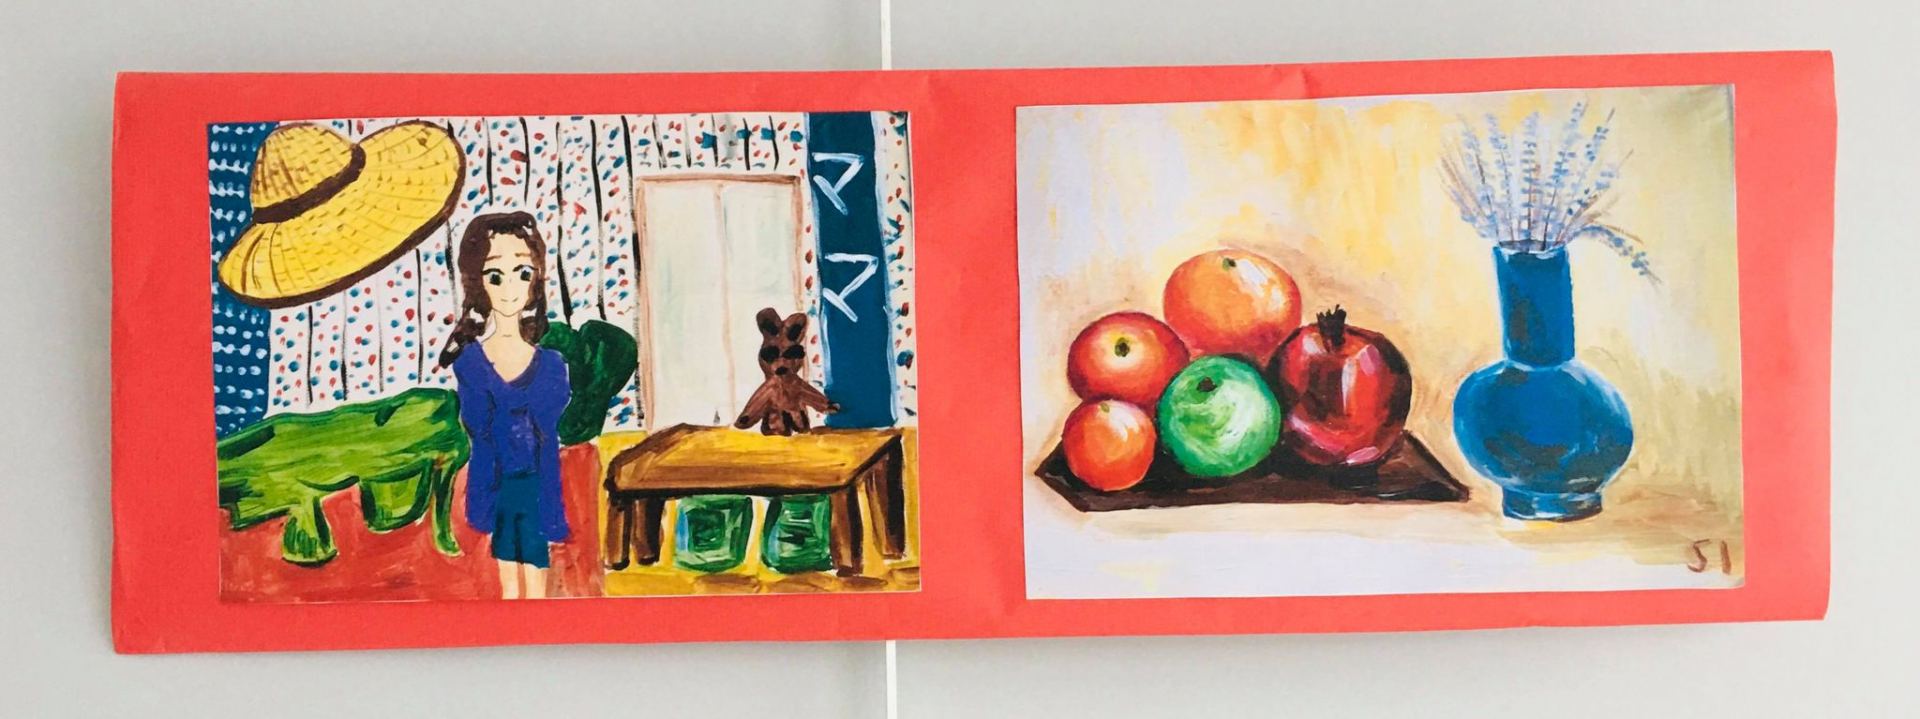 В Париже прошел арт-праздник - представлены работы азербайджанских детей (ФОТО)